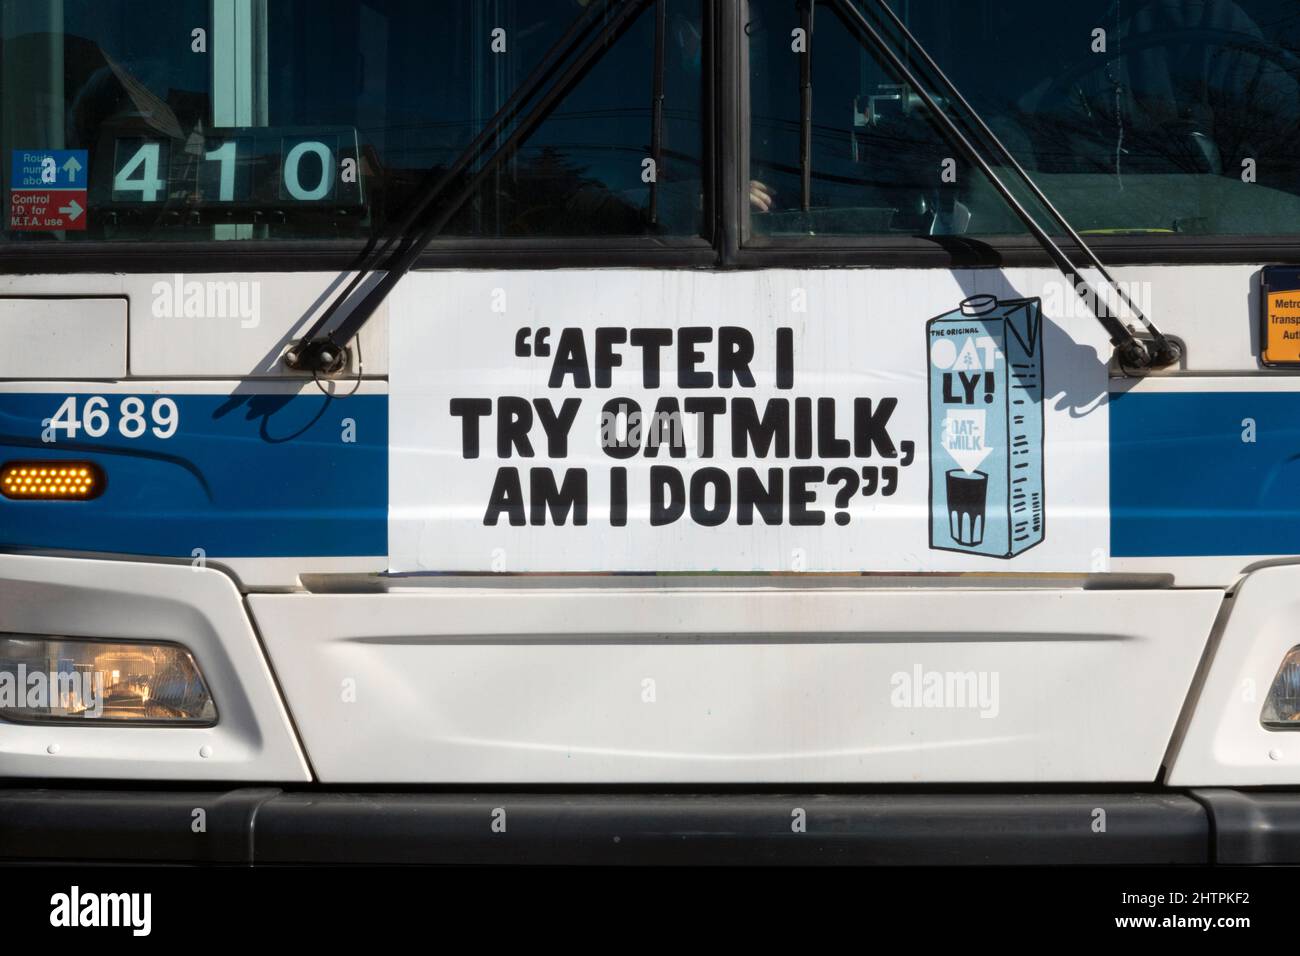 Eine witzige, witzige, respektlos erscheinende Oatly Hafermilch-Anzeige auf der Vorderseite eines New York City-Busses in Queens New York City. Stockfoto